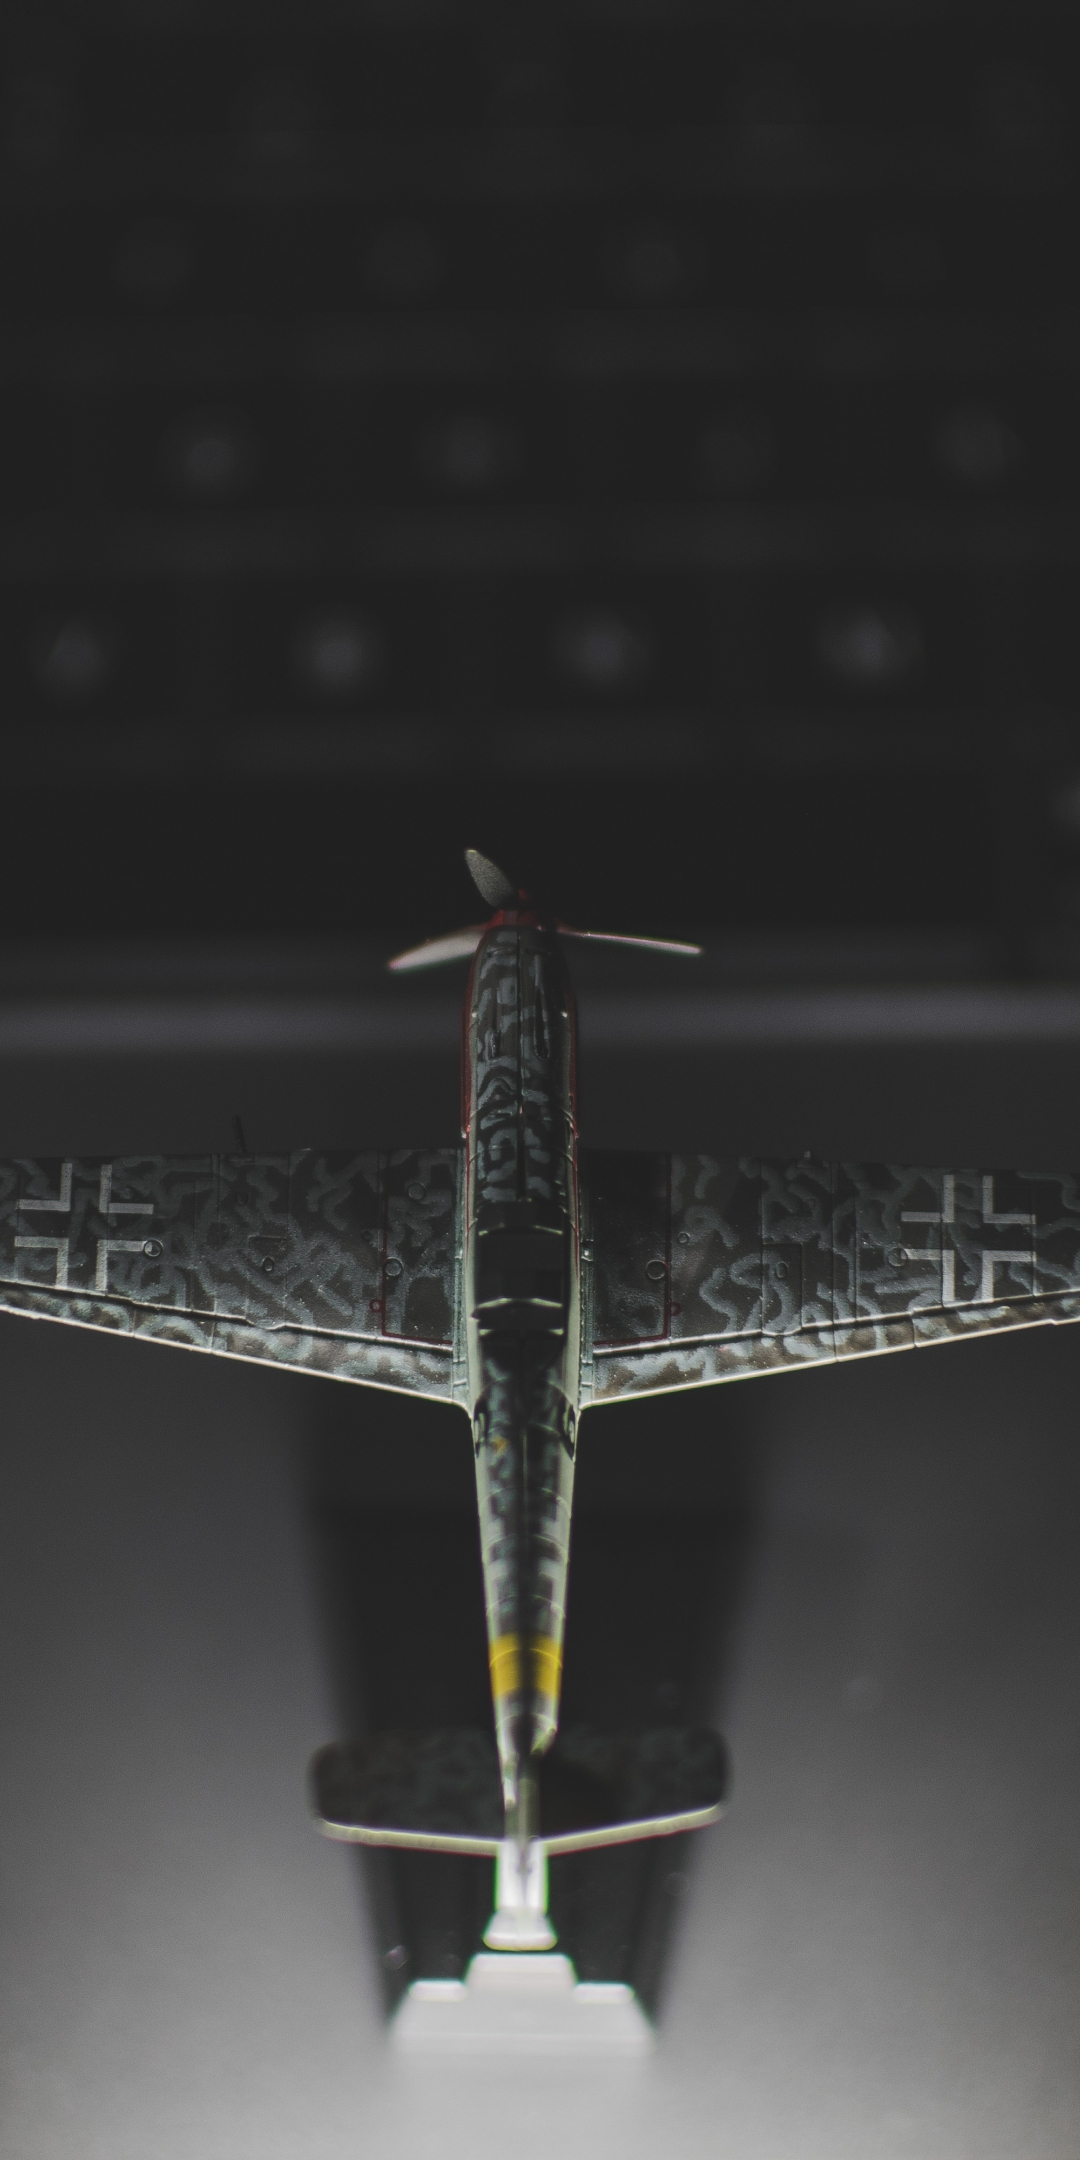 Airplane, toy, dark, 1080x2160 wallpaper